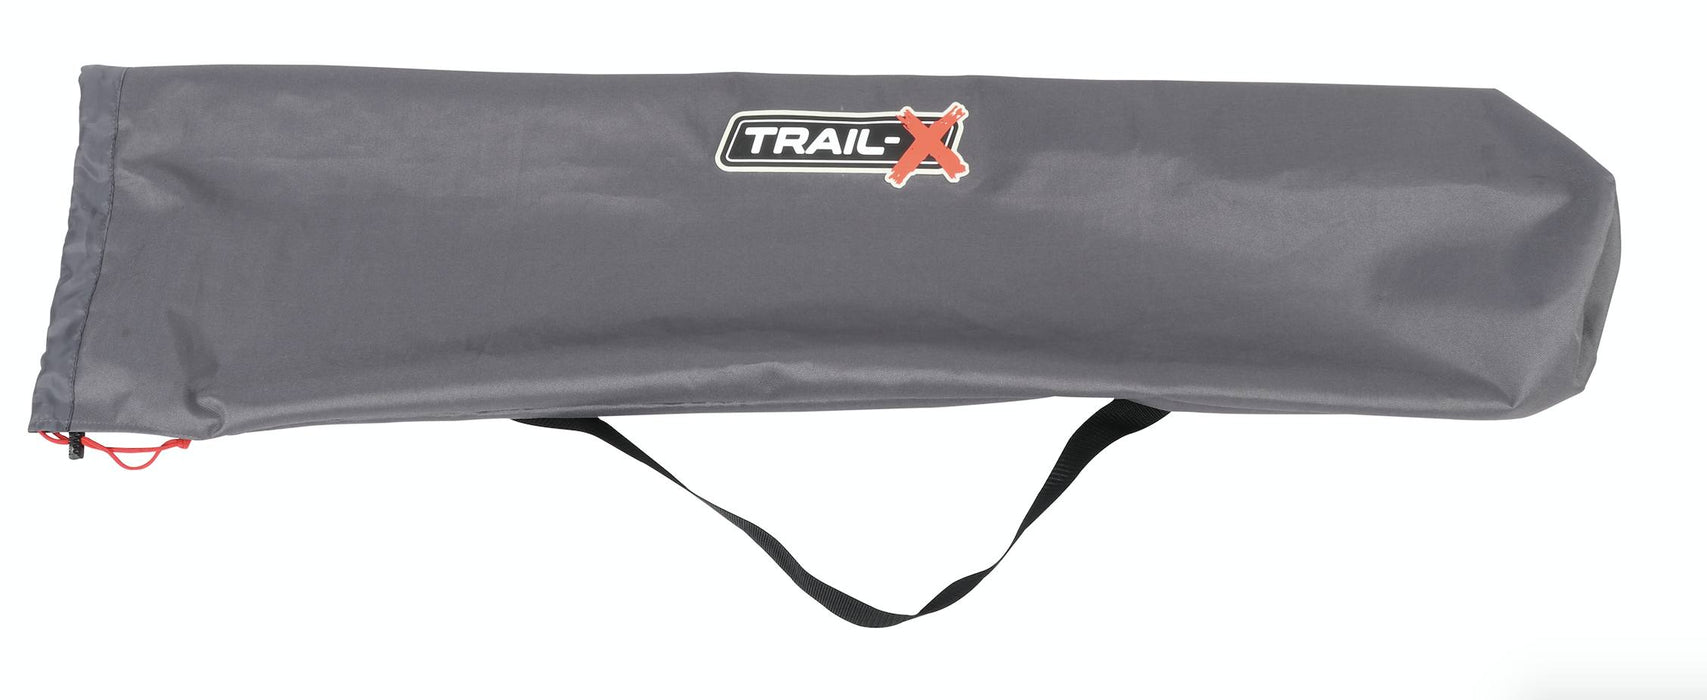 Trail-X O.G Single Easy Fold Stretcher